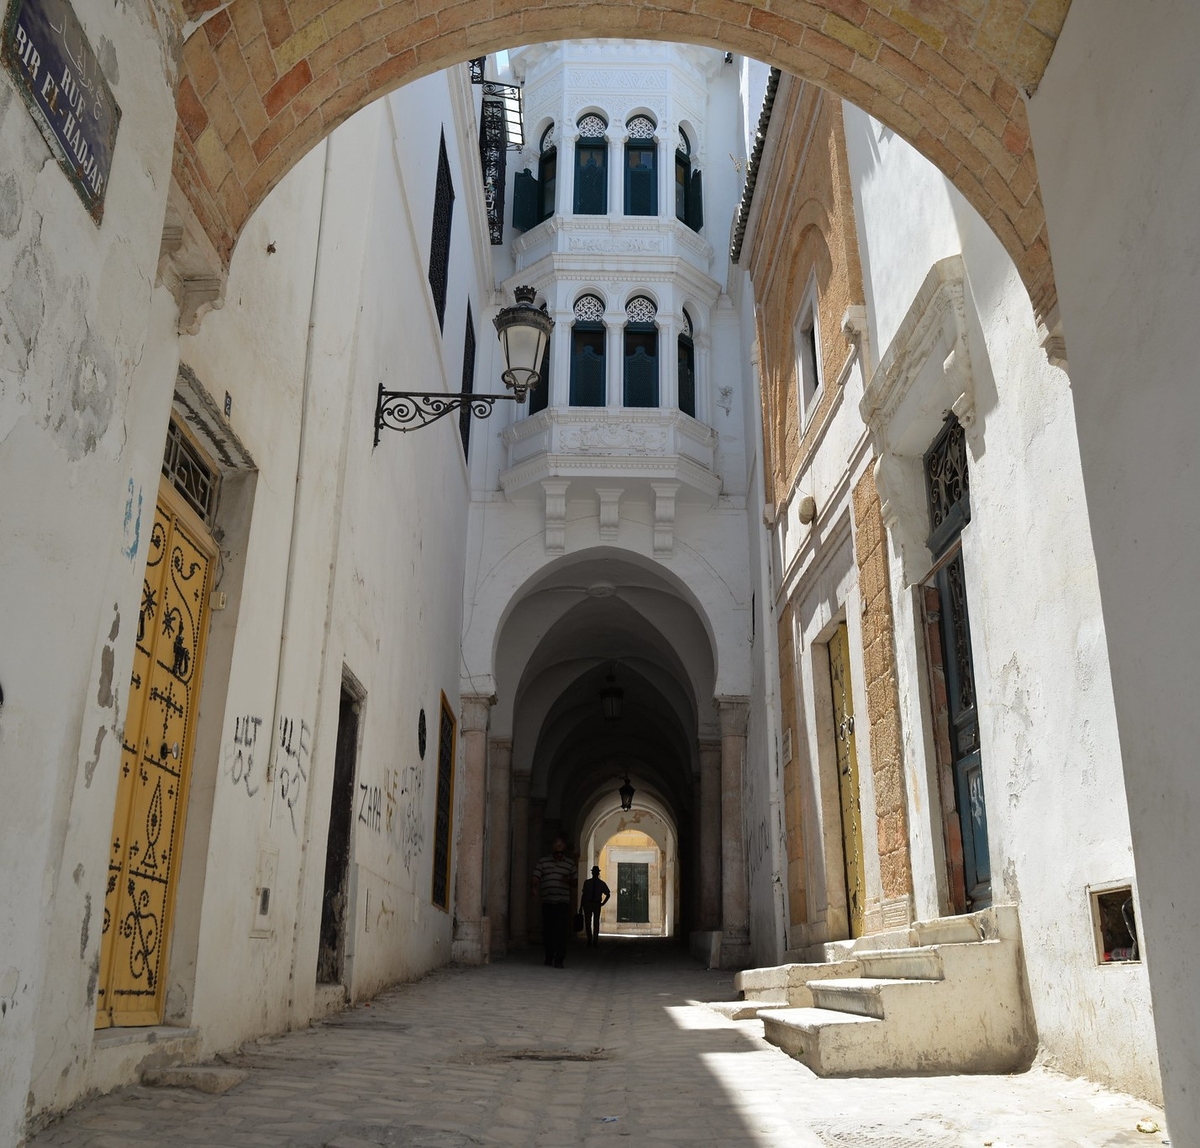 Tunis_Medina_Flickr_Citizen 59_SMALLER.jpg